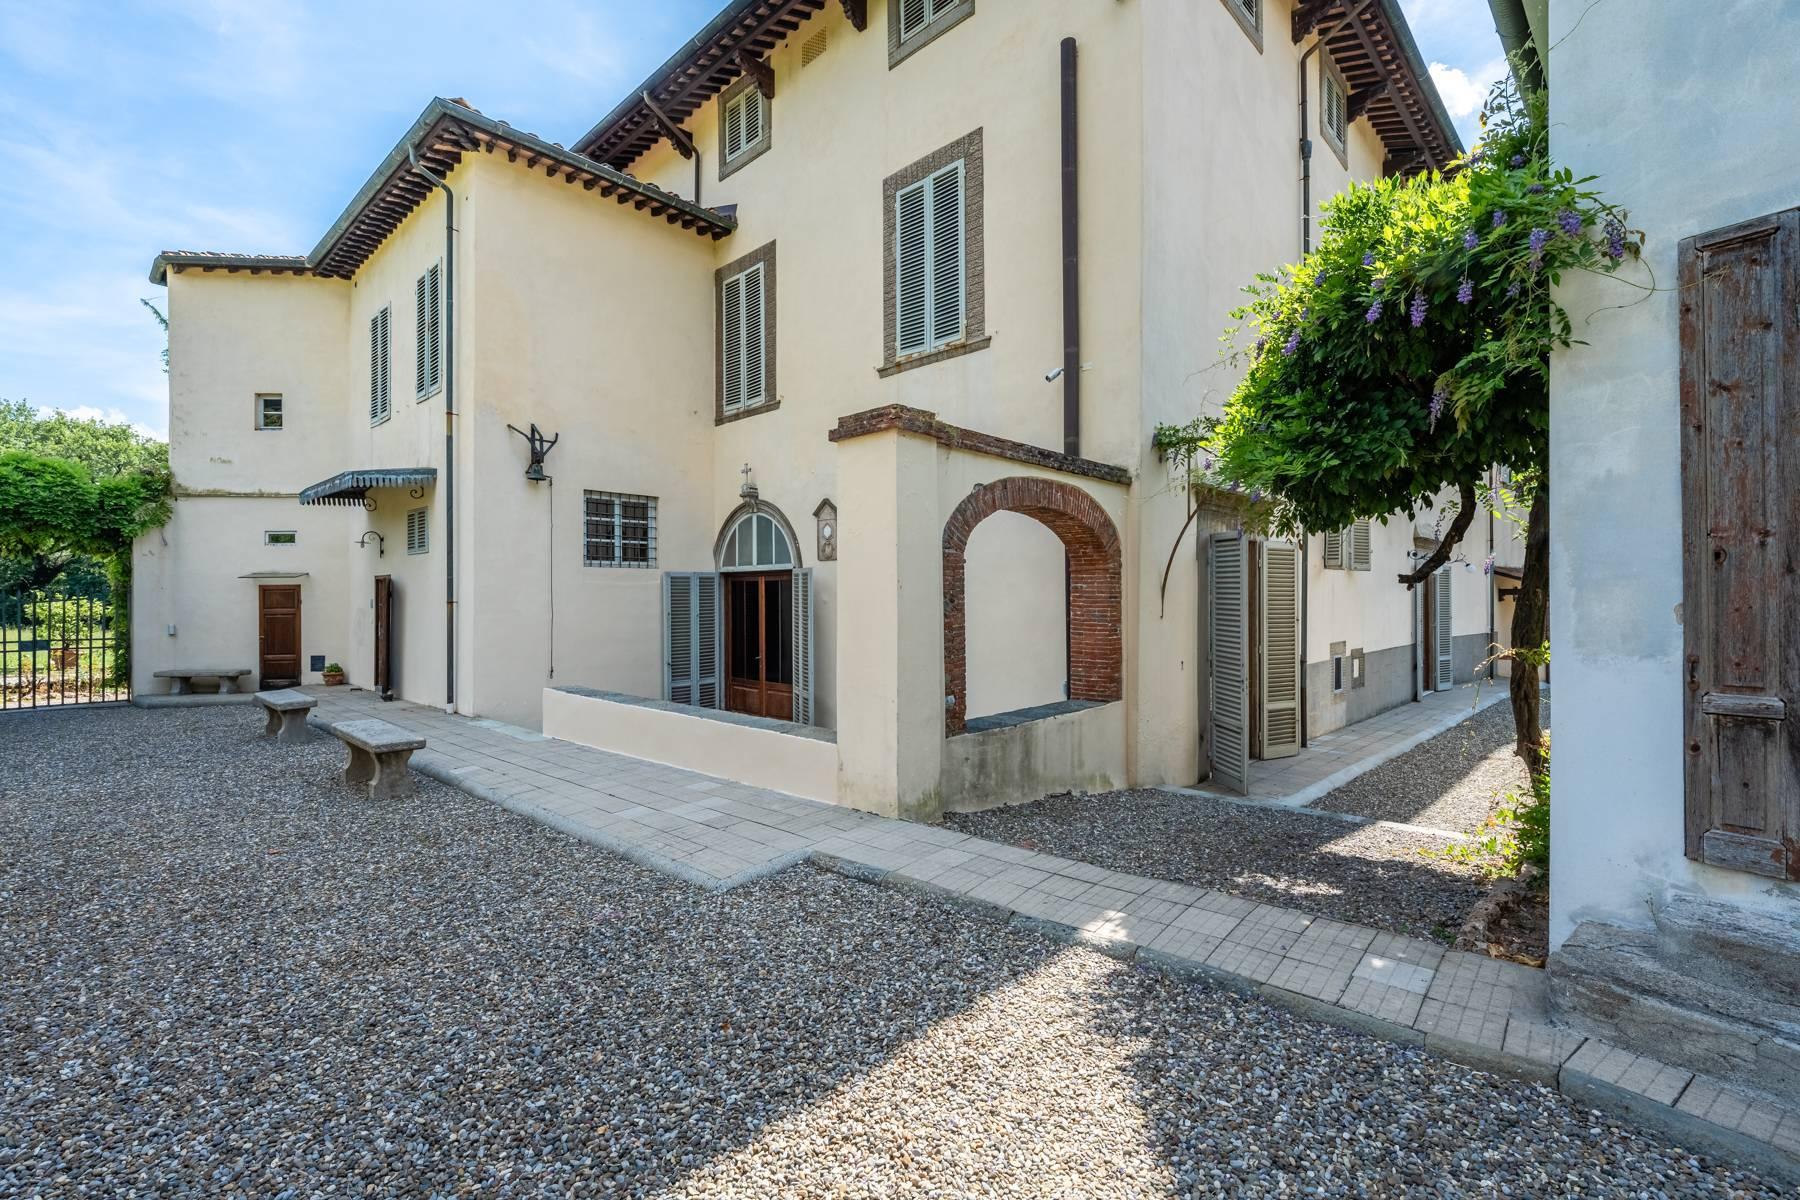 Incantevole villa settecentesca nei pressi di Lucca - 3